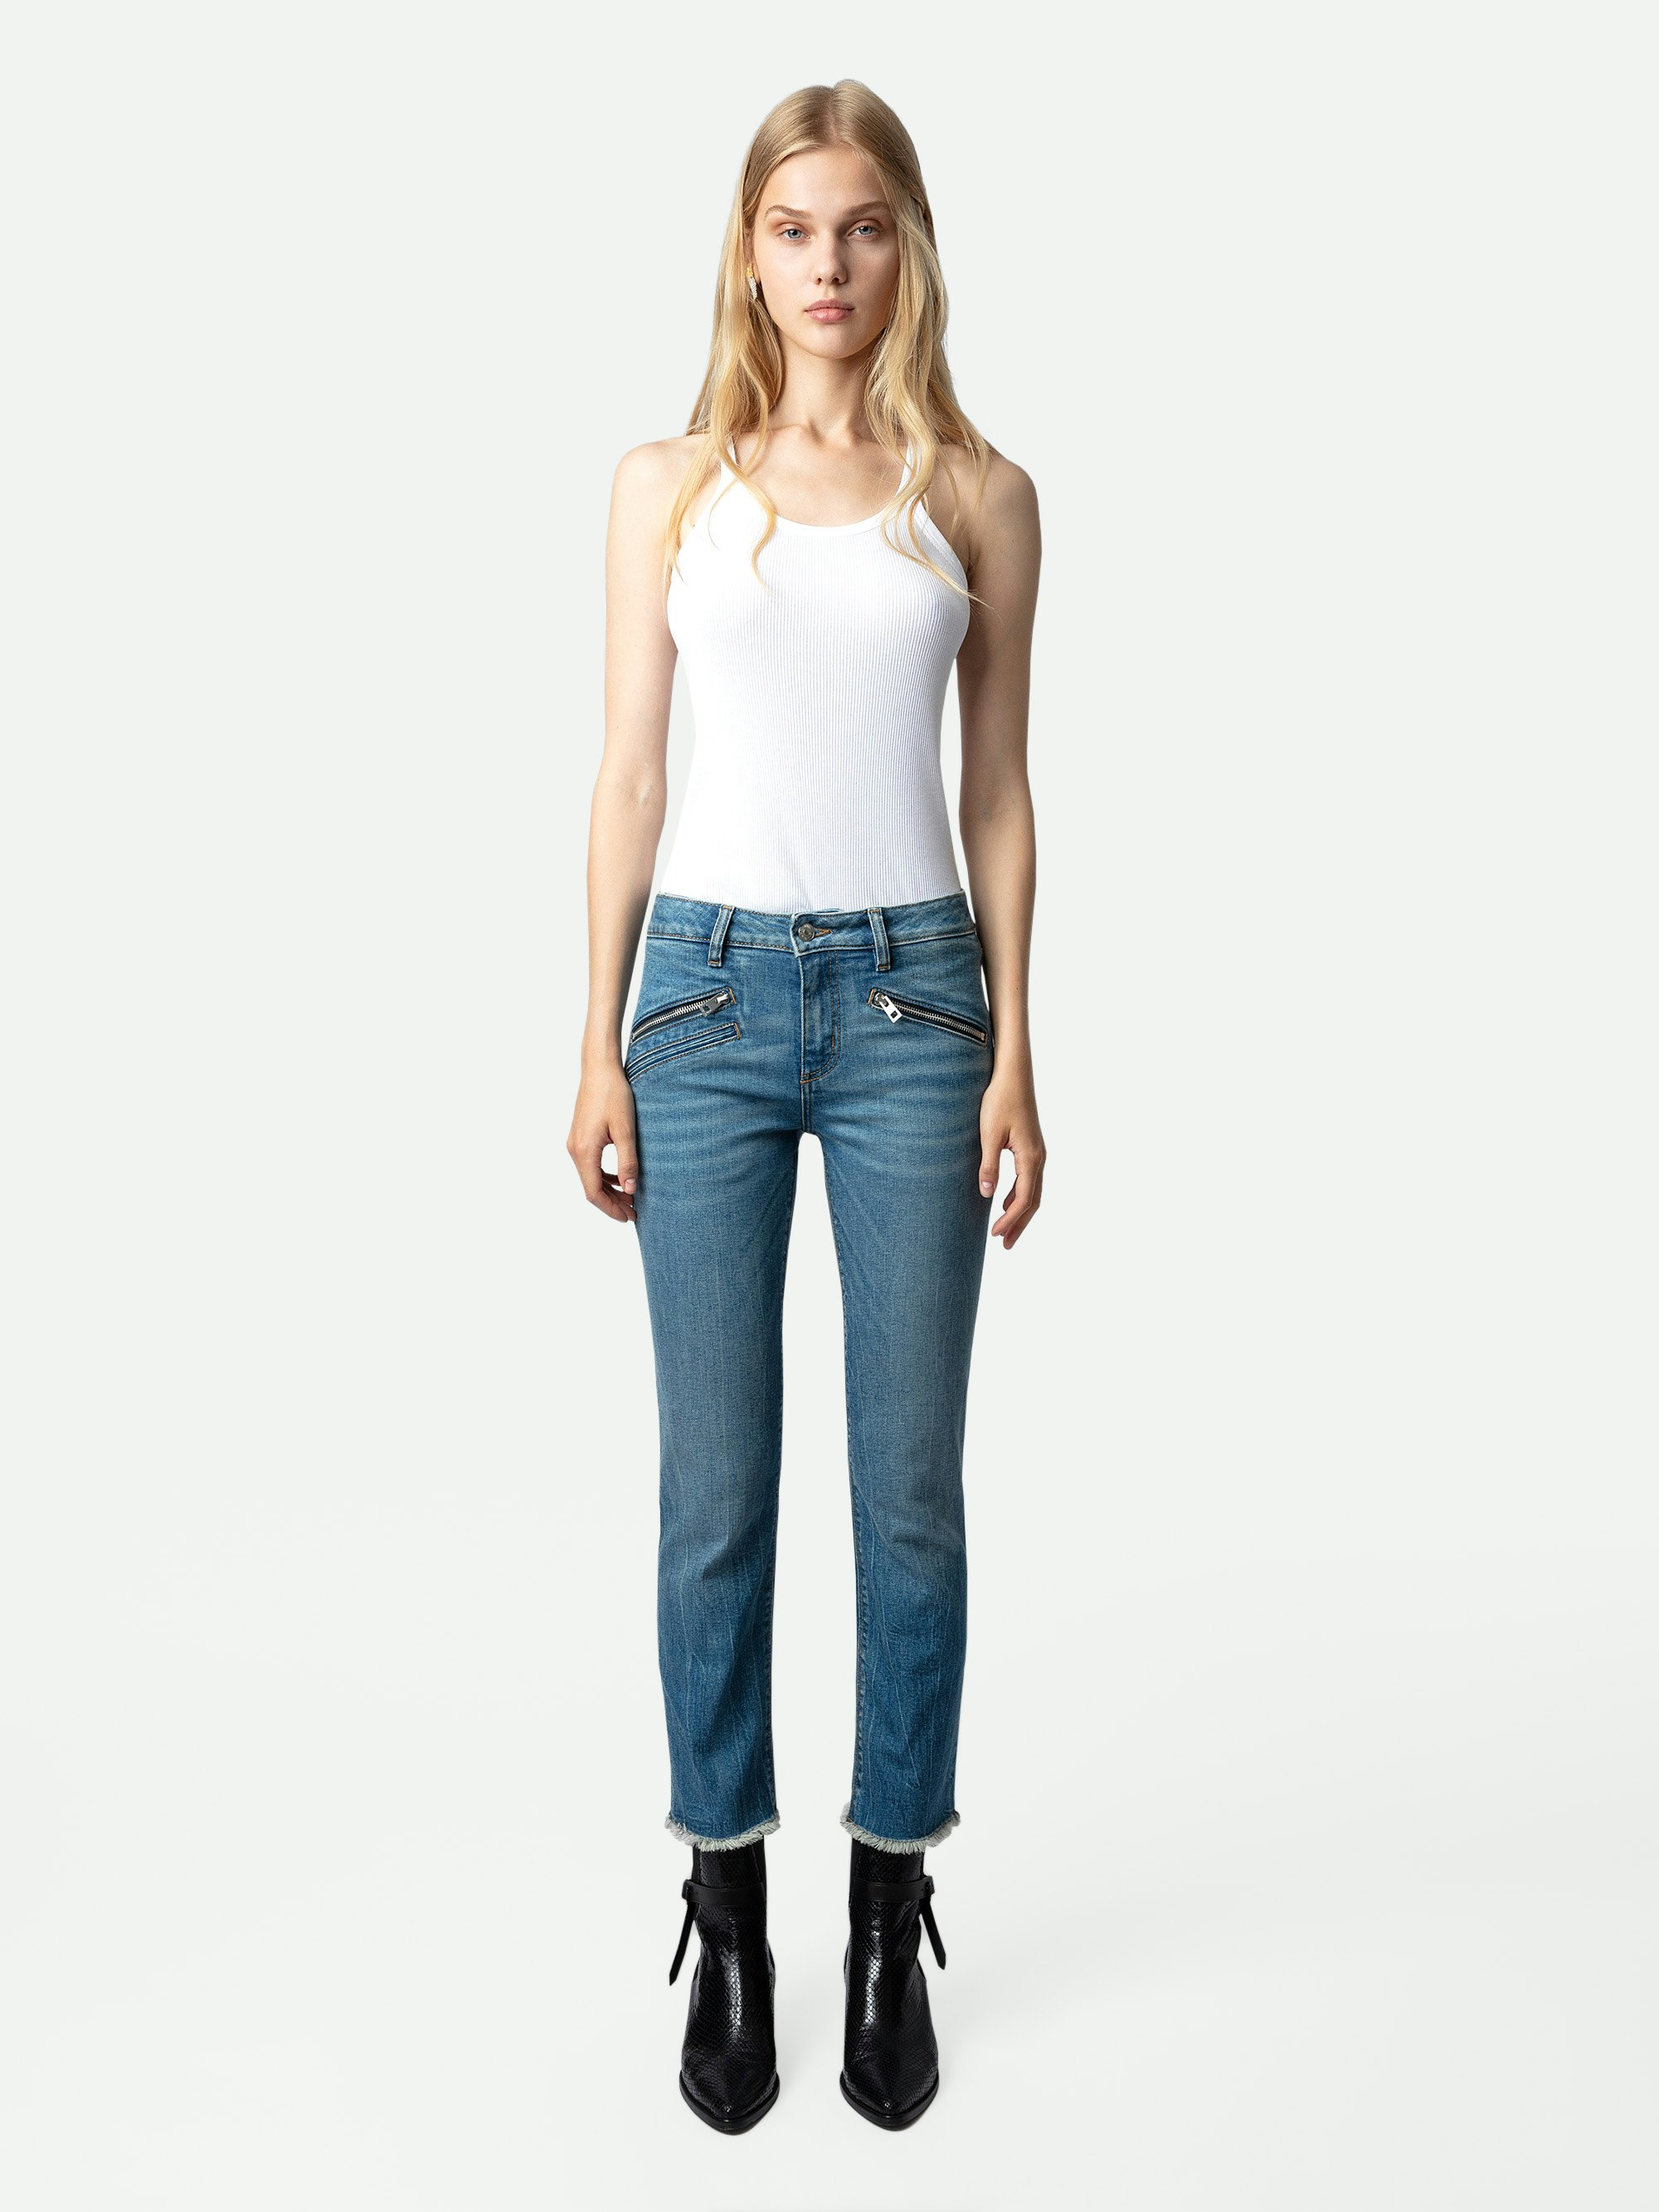 Women's trendy, modern jeans